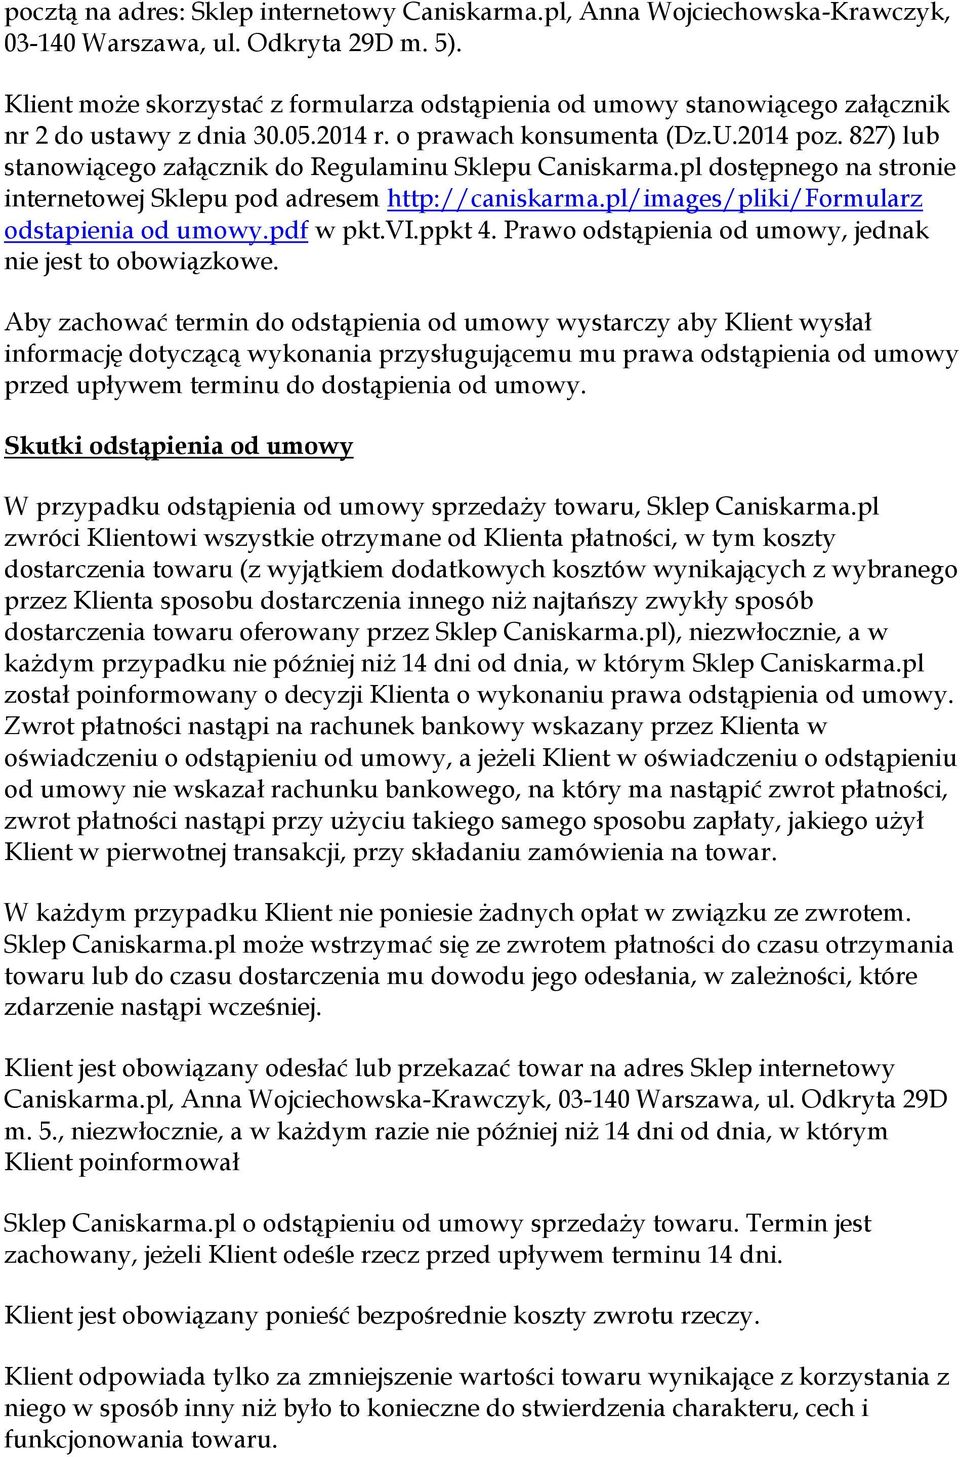 827) lub stanowiącego załącznik do Regulaminu Sklepu Caniskarma.pl dostępnego na stronie internetowej Sklepu pod adresem http://caniskarma.pl/images/pliki/formularz odstapienia od umowy.pdf w pkt.vi.